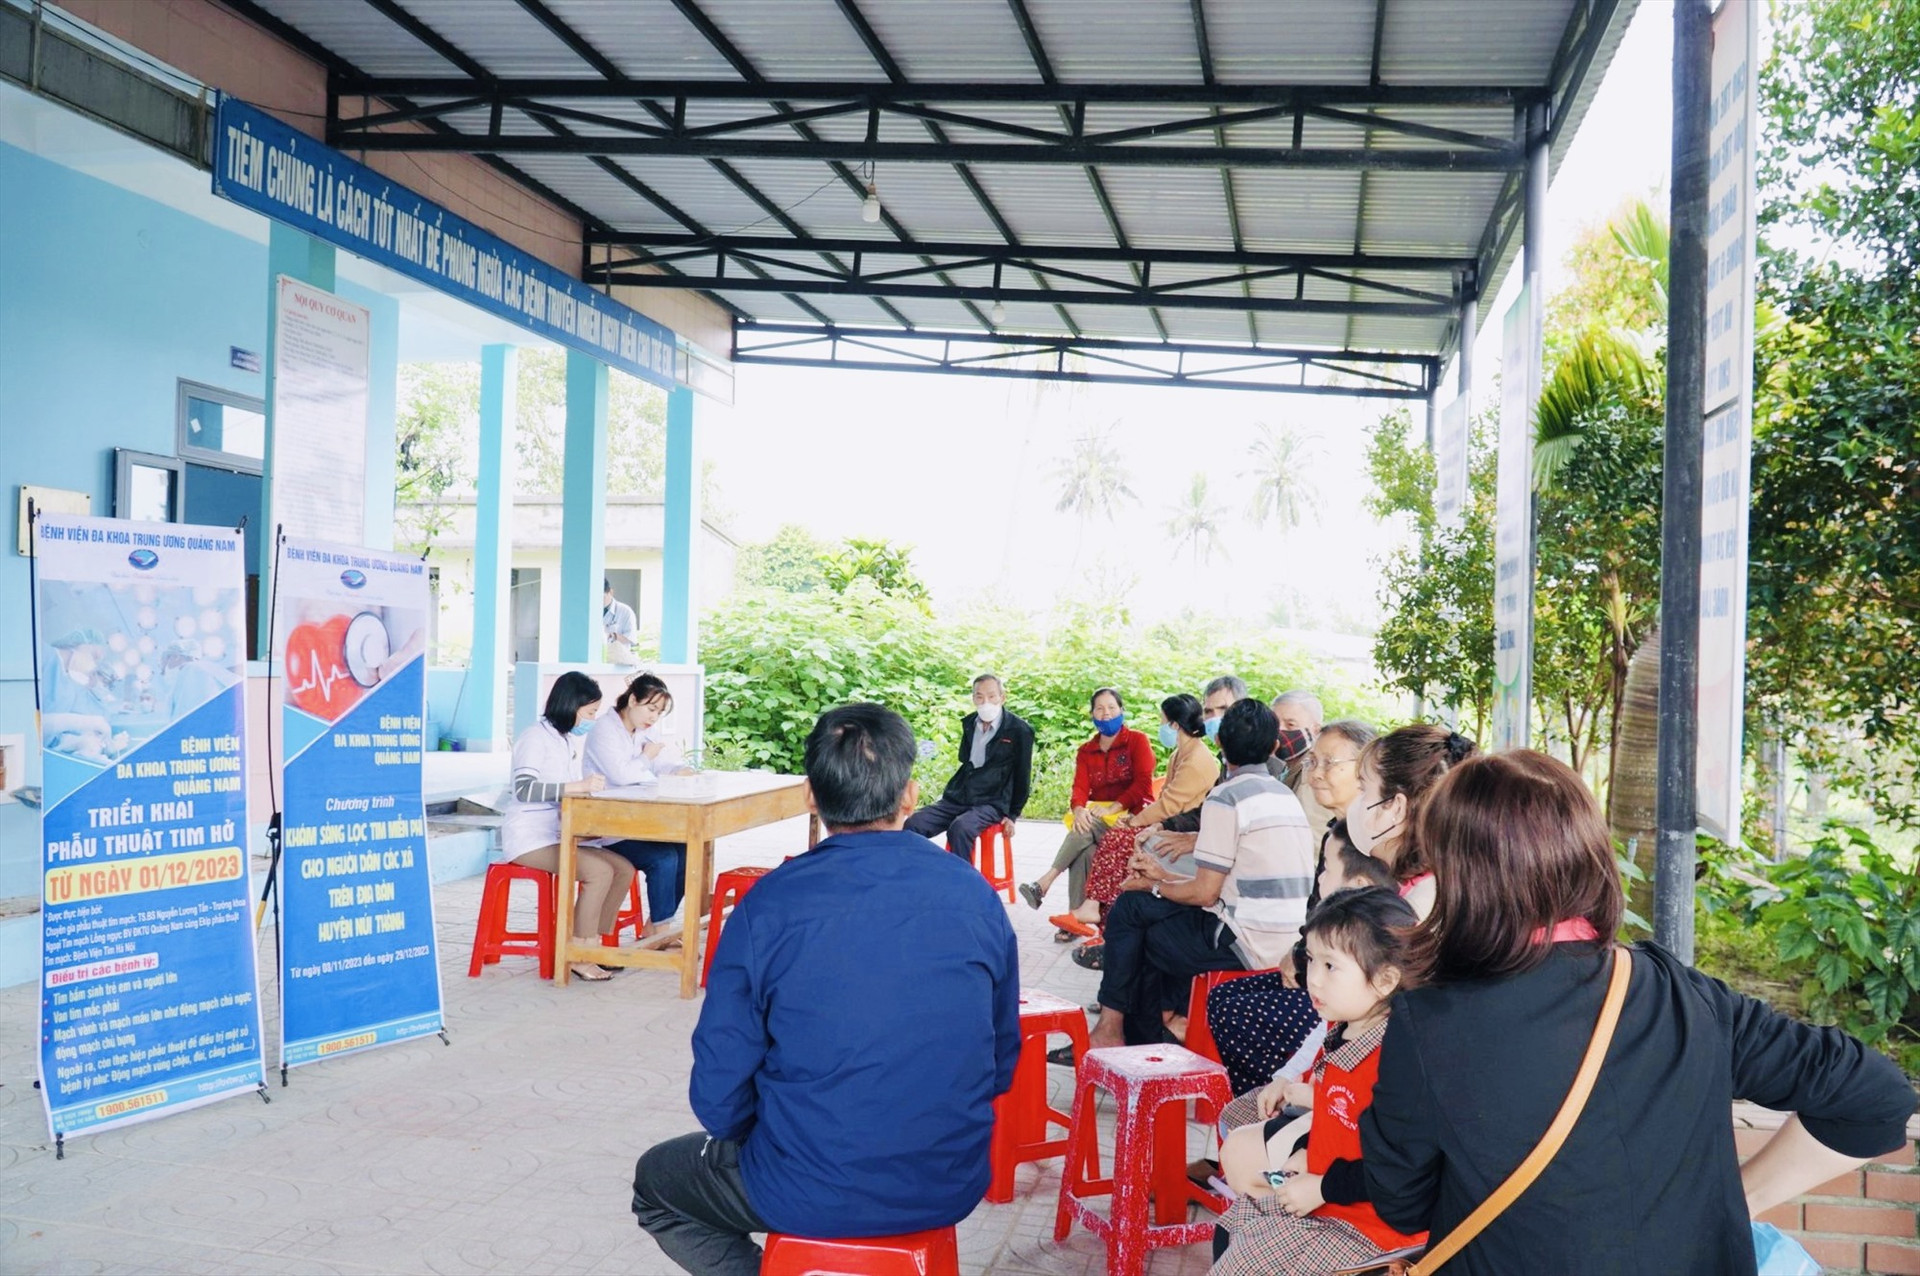 Bệnh viện Đa khoa Trung ương Quảng Nam đã triển khai khám tầm soát tim miễn phí cho hơn 6000 người dân tại huyện Núi Thành. Ảnh: BÙI HUÂN